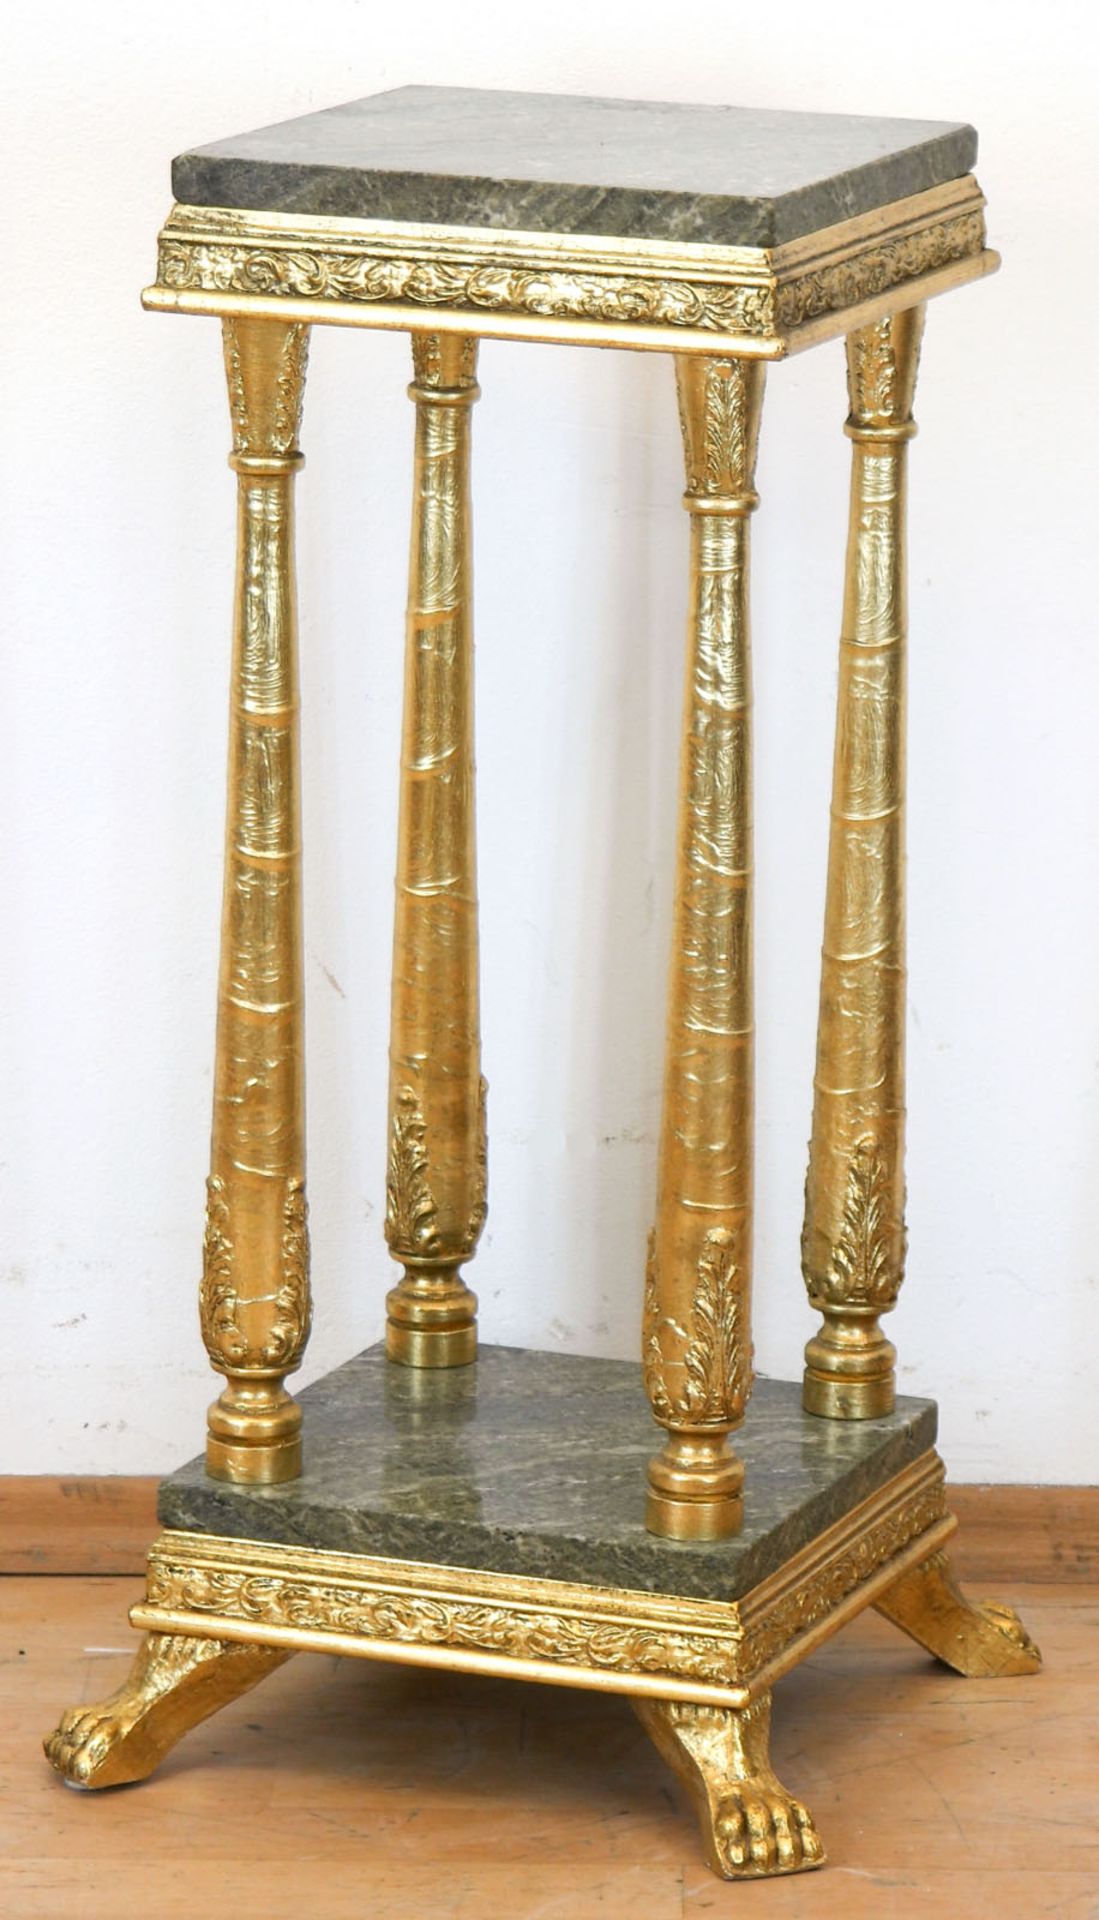 Lampentisch im Louis-Seize-Stil, Holz, vergoldet, Marmorplatte als Deck- und Fußplatte, 66x25x25 cm